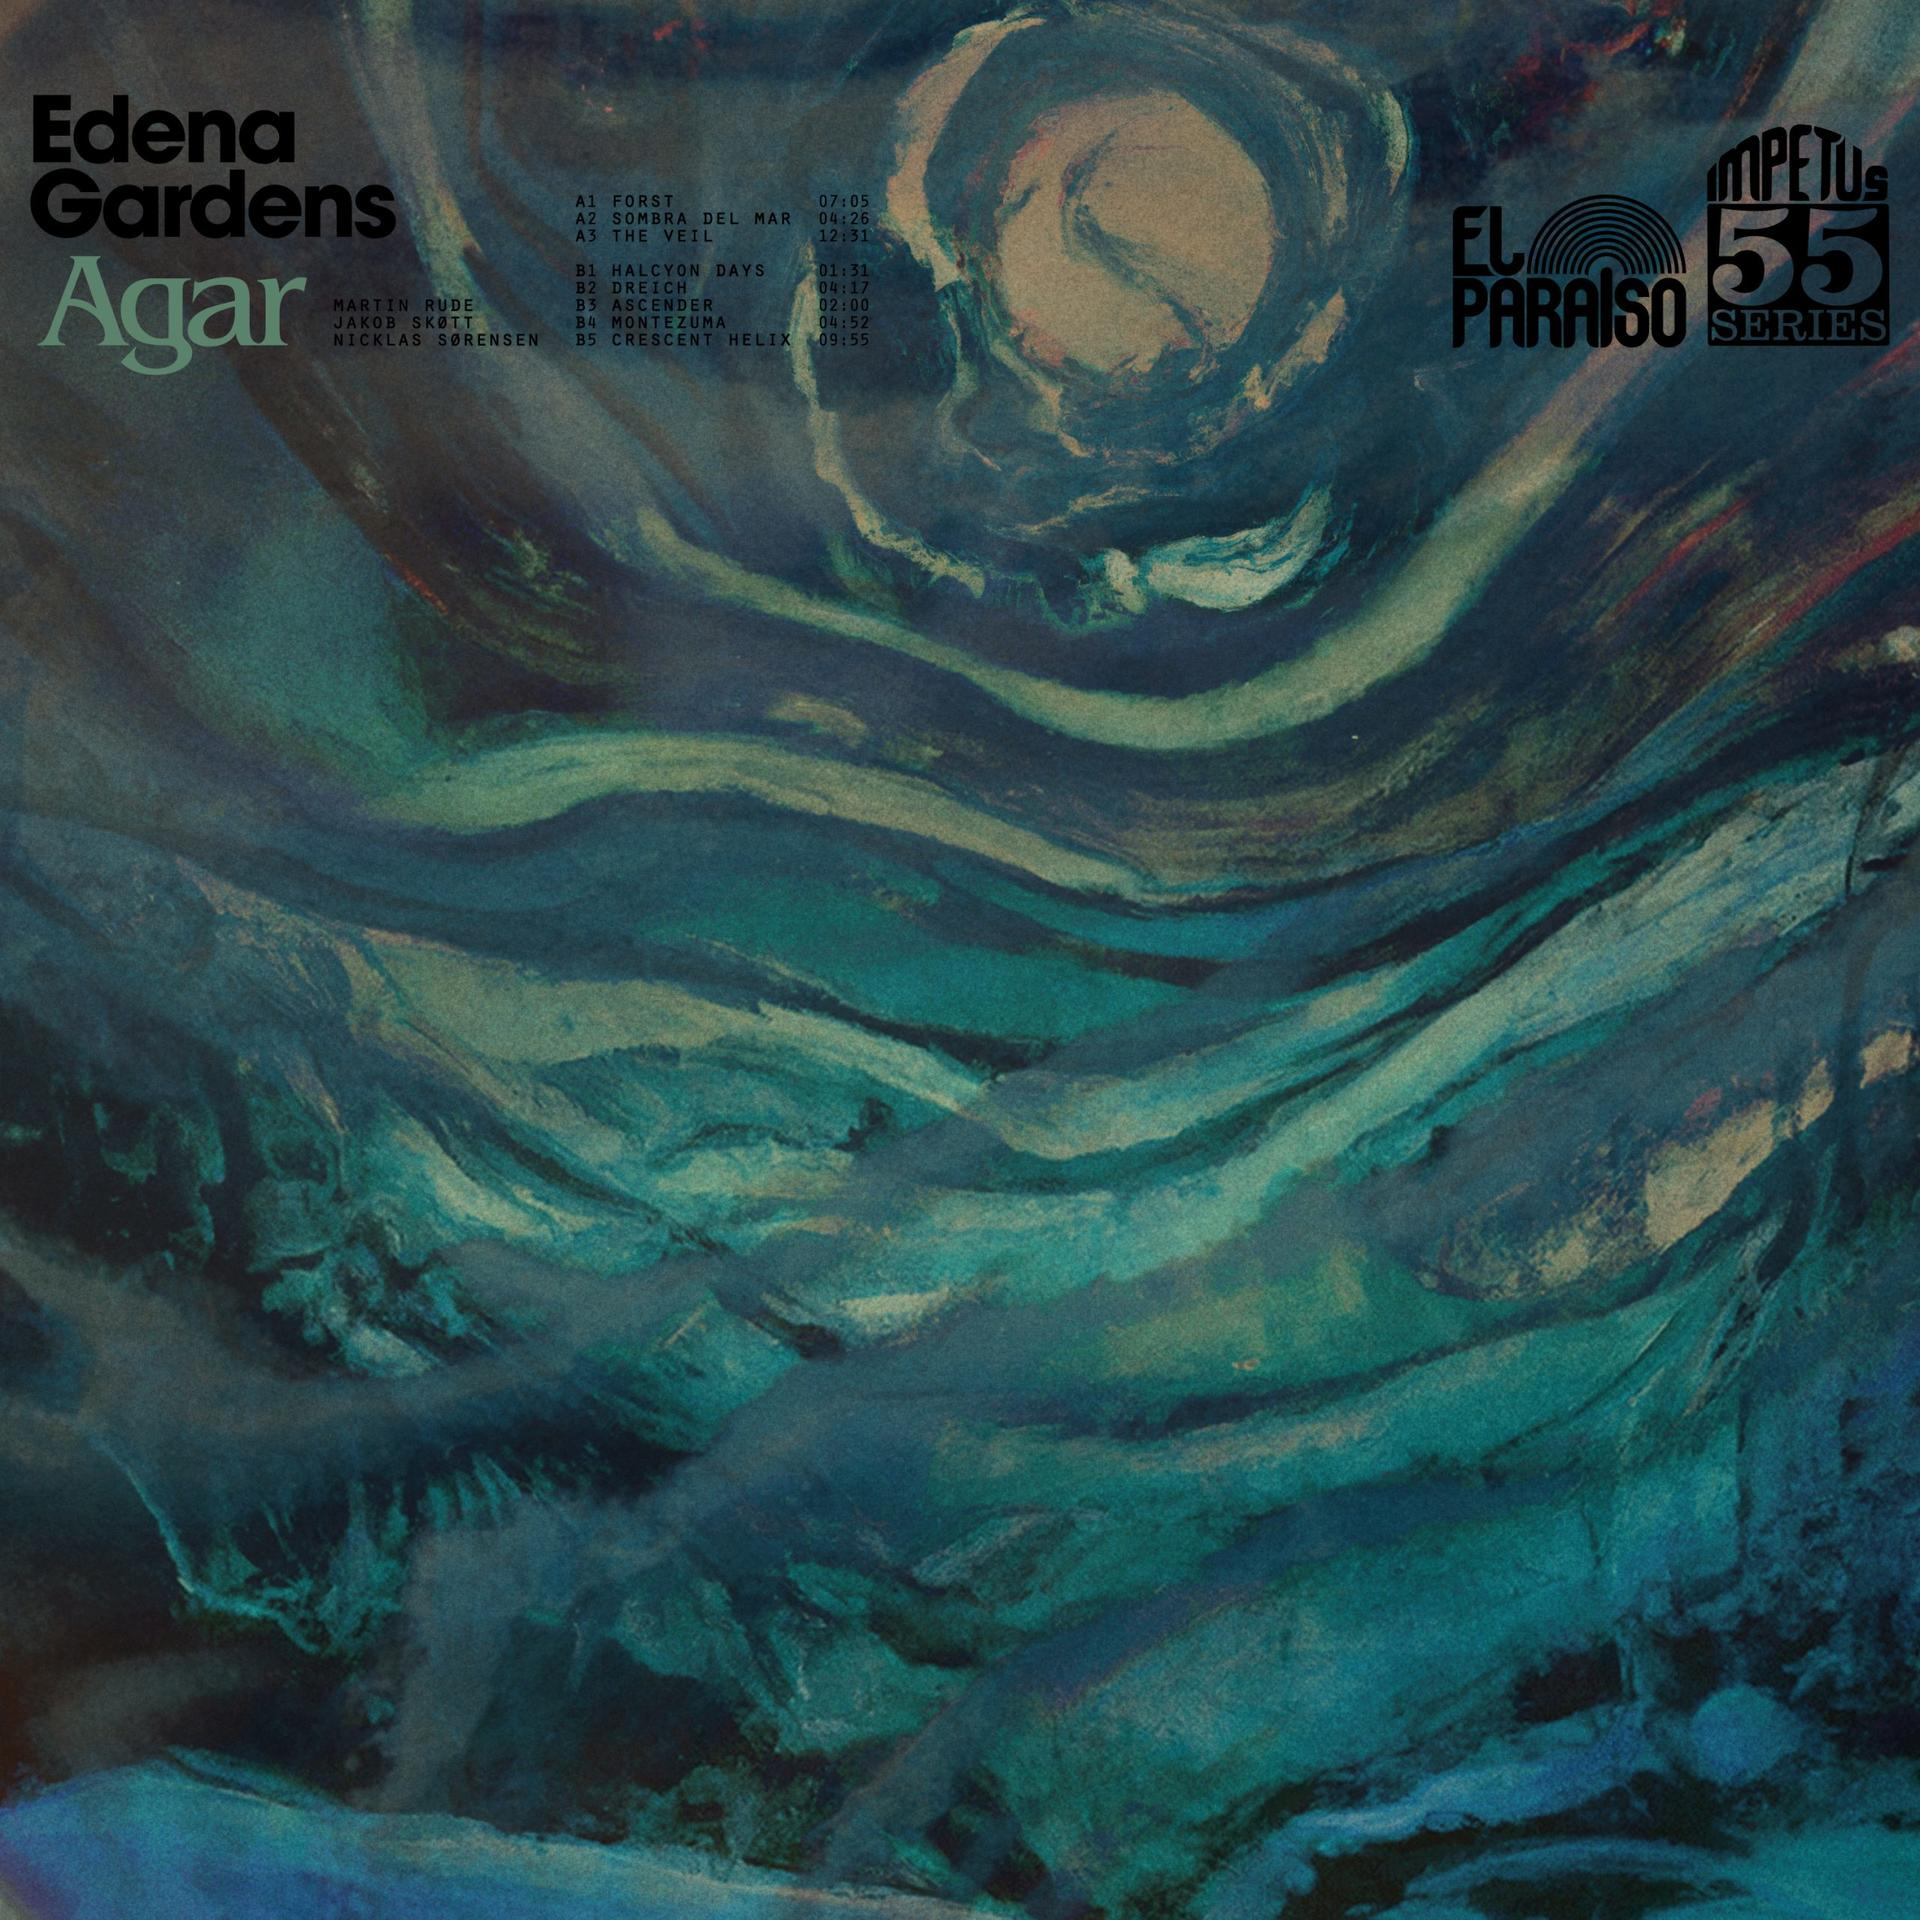 Agar - Edena Gardens - (CD)